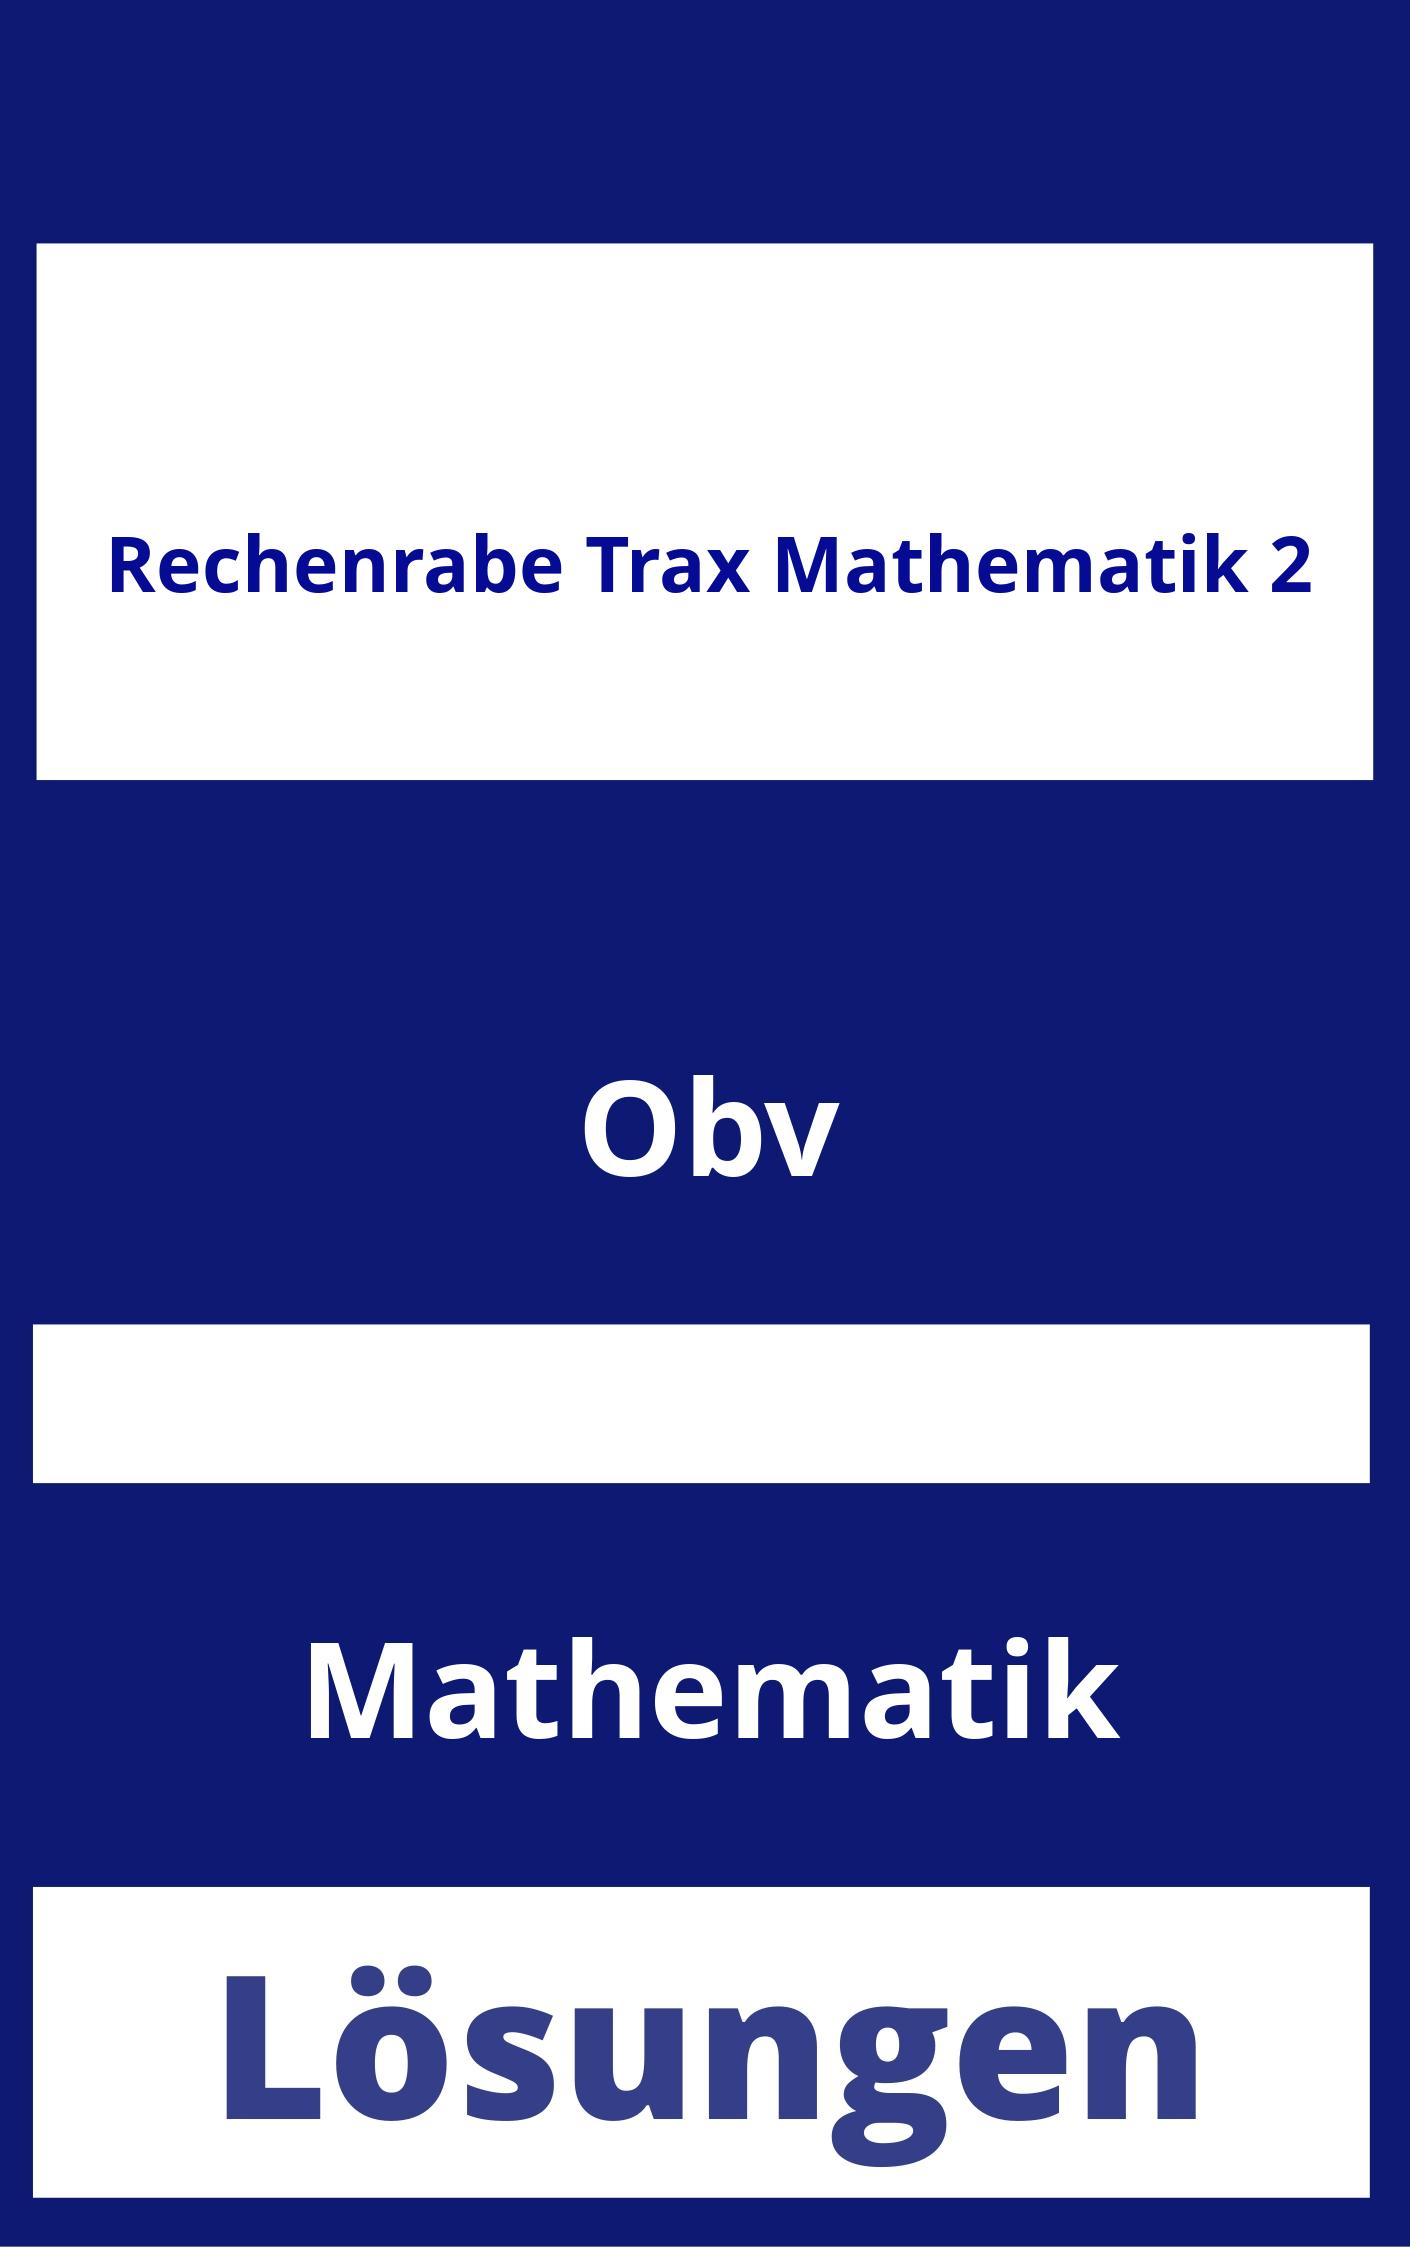 Rechenrabe Trax Mathematik 2 Lösungen PDF